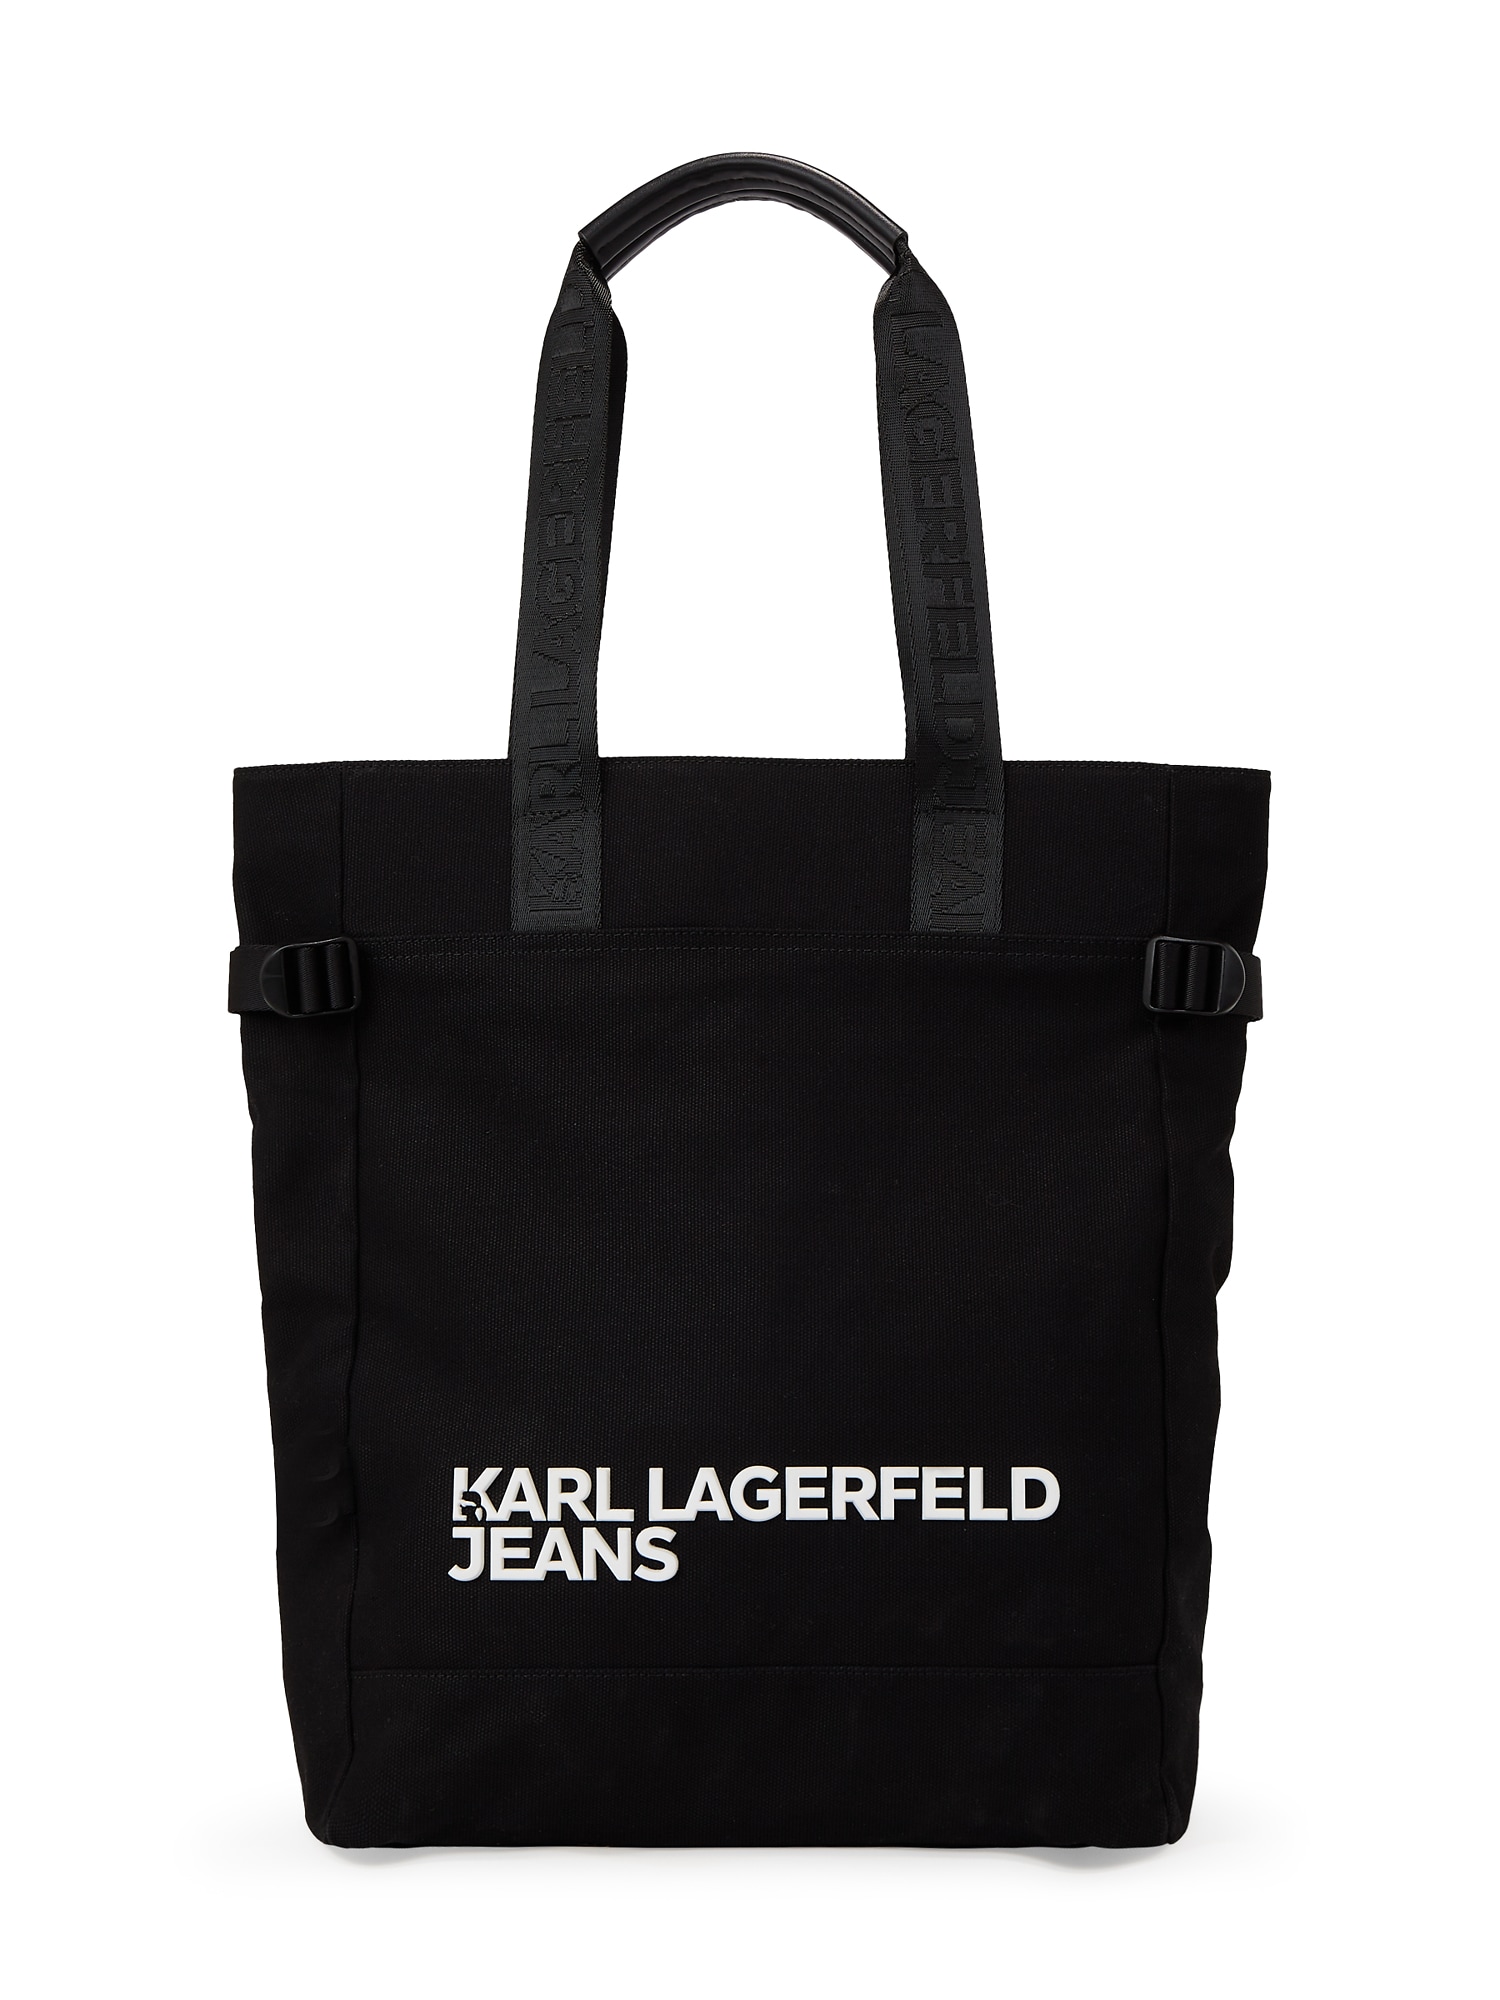 KARL LAGERFELD JEANS Pirkinių krepšys 'Utility' juoda / balta